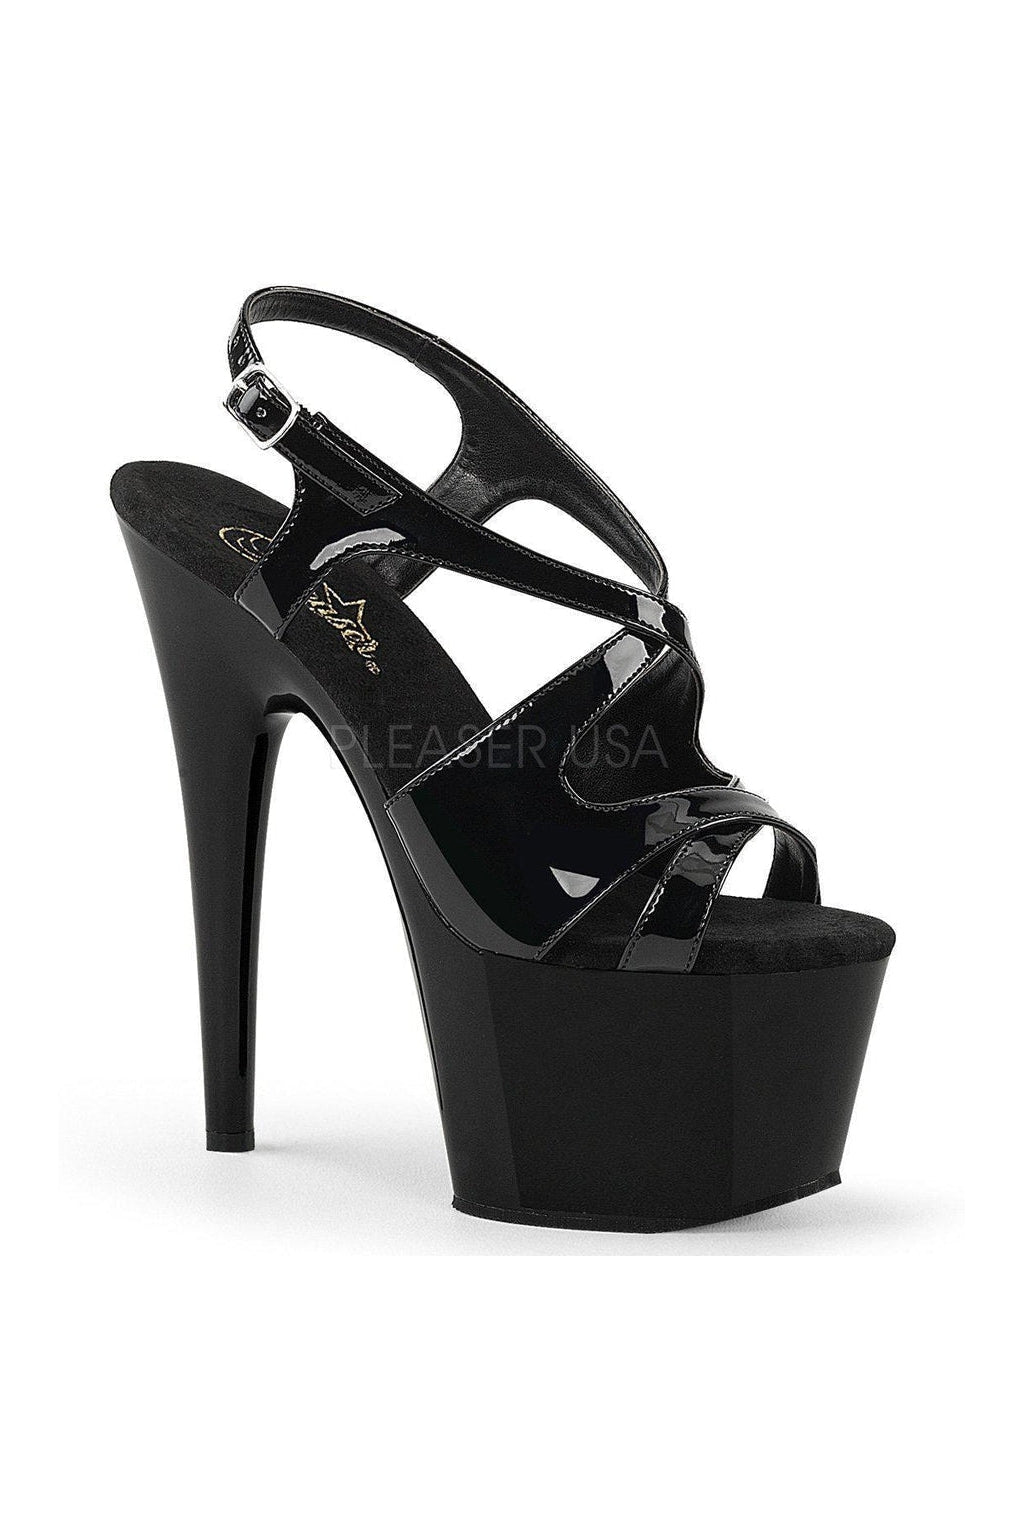 ADORE-730 Platform Sandals | Black Patent-Pleaser-Black-Sandals-SEXYSHOES.COM